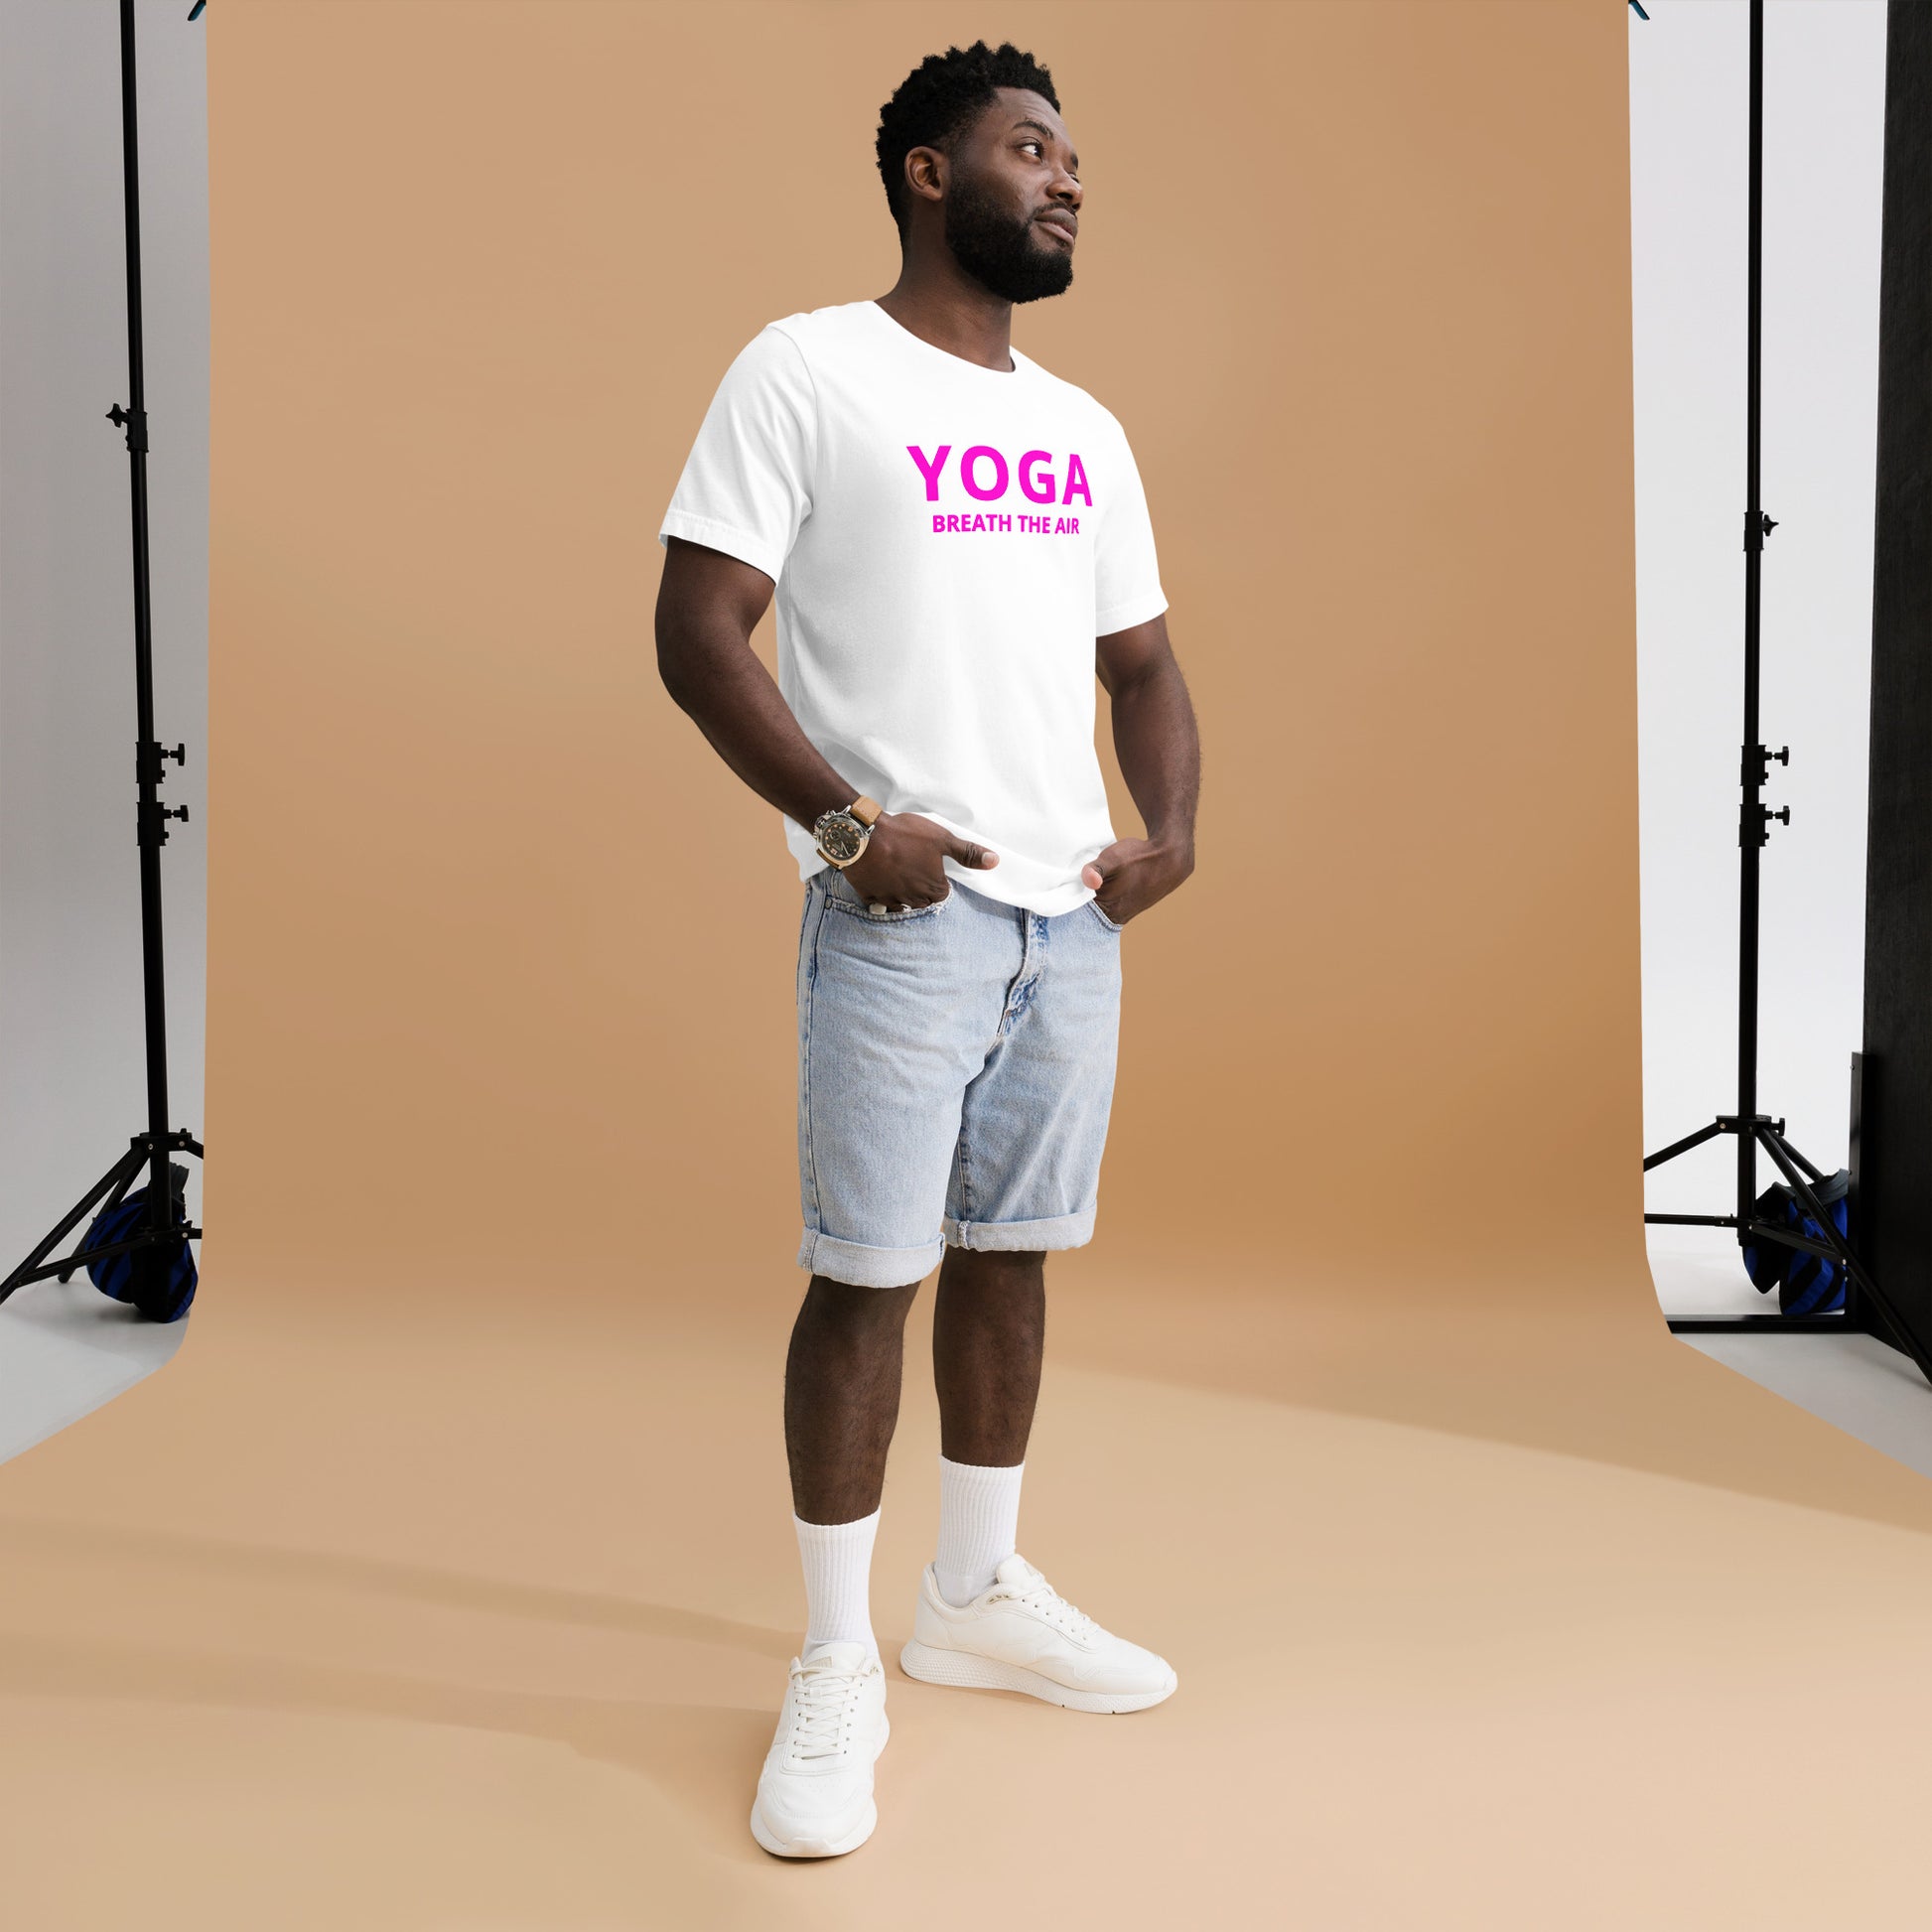 yoga - health - yoga tshirt - shirts - men tshirt - graphic tees